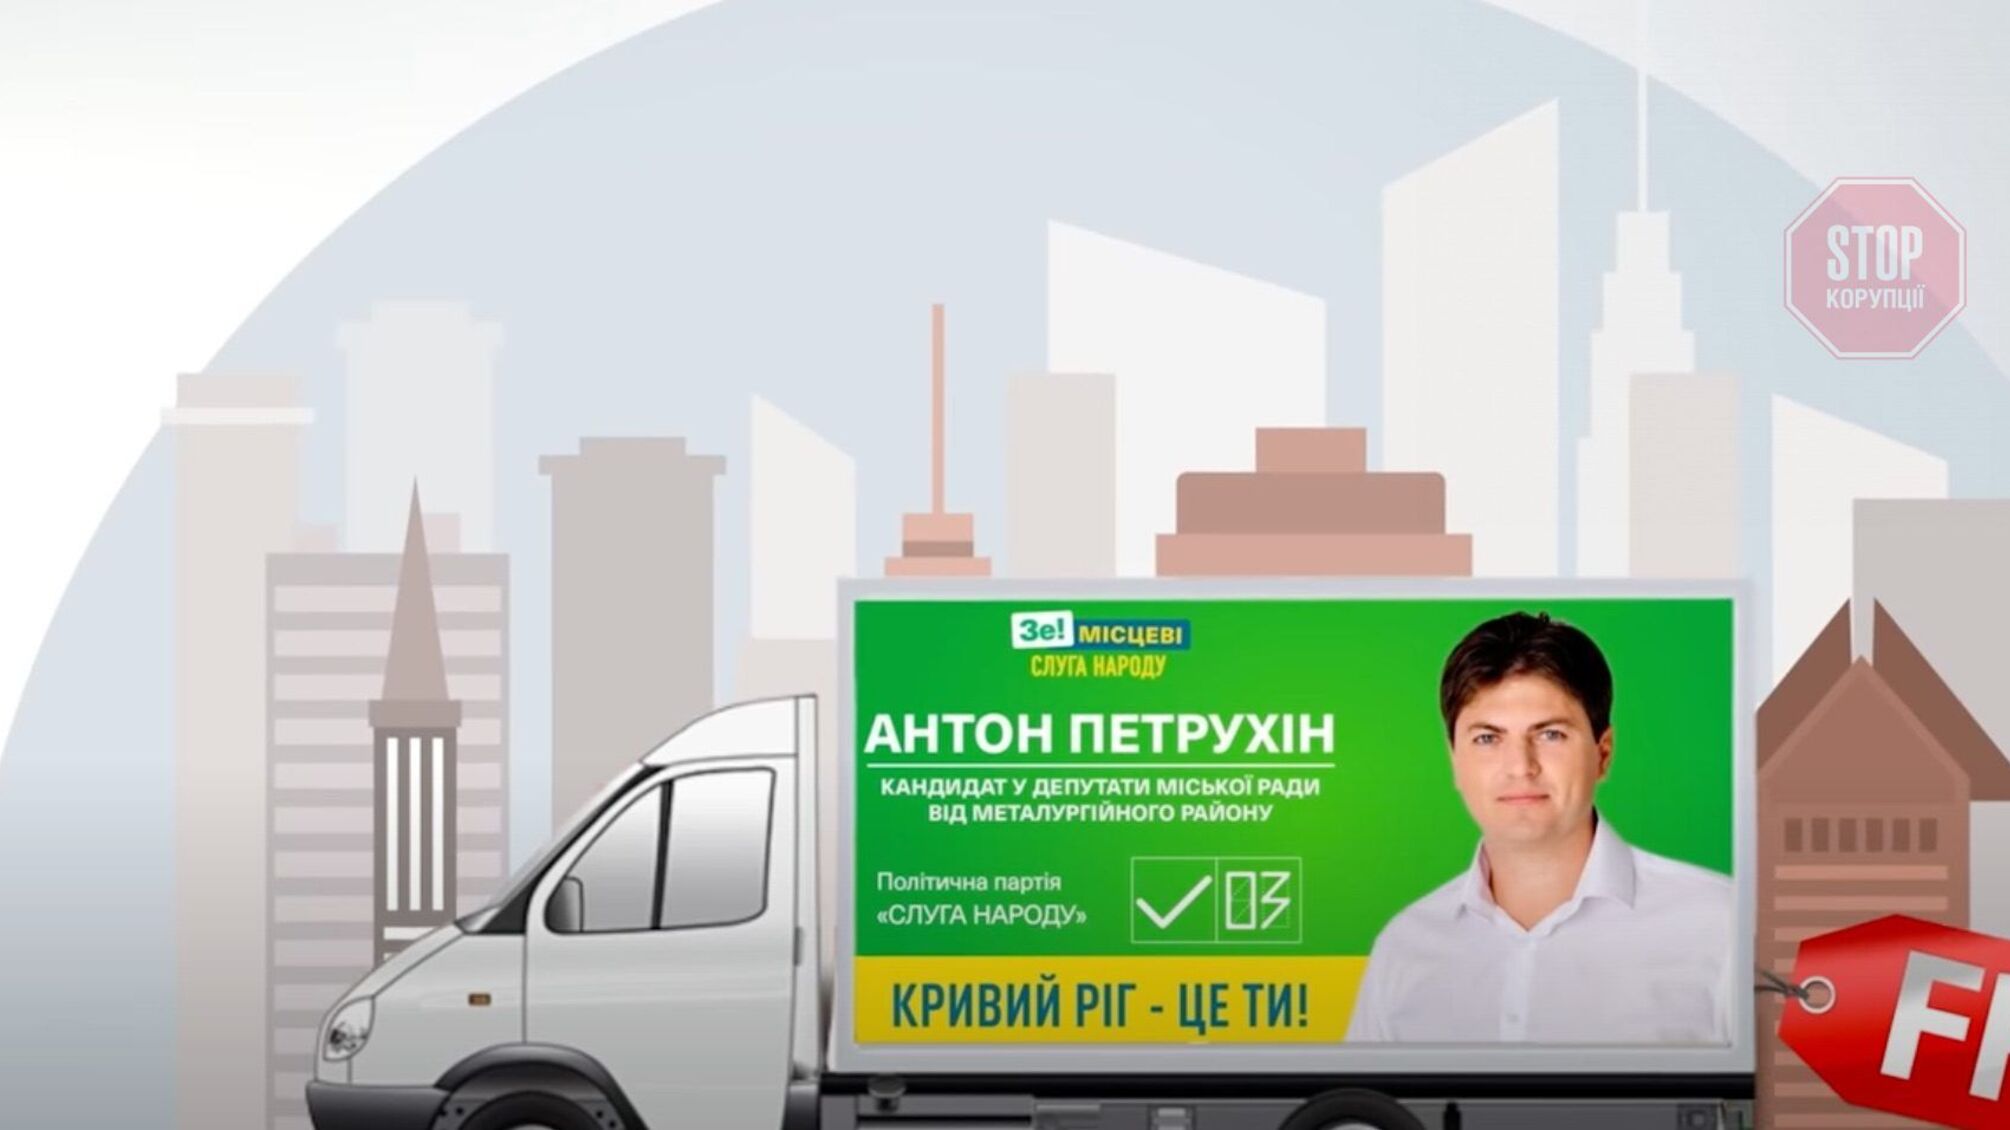 Предвыборную кампанию эко-активиста Петрухина неофициально спонсировали криворожские промышленники?